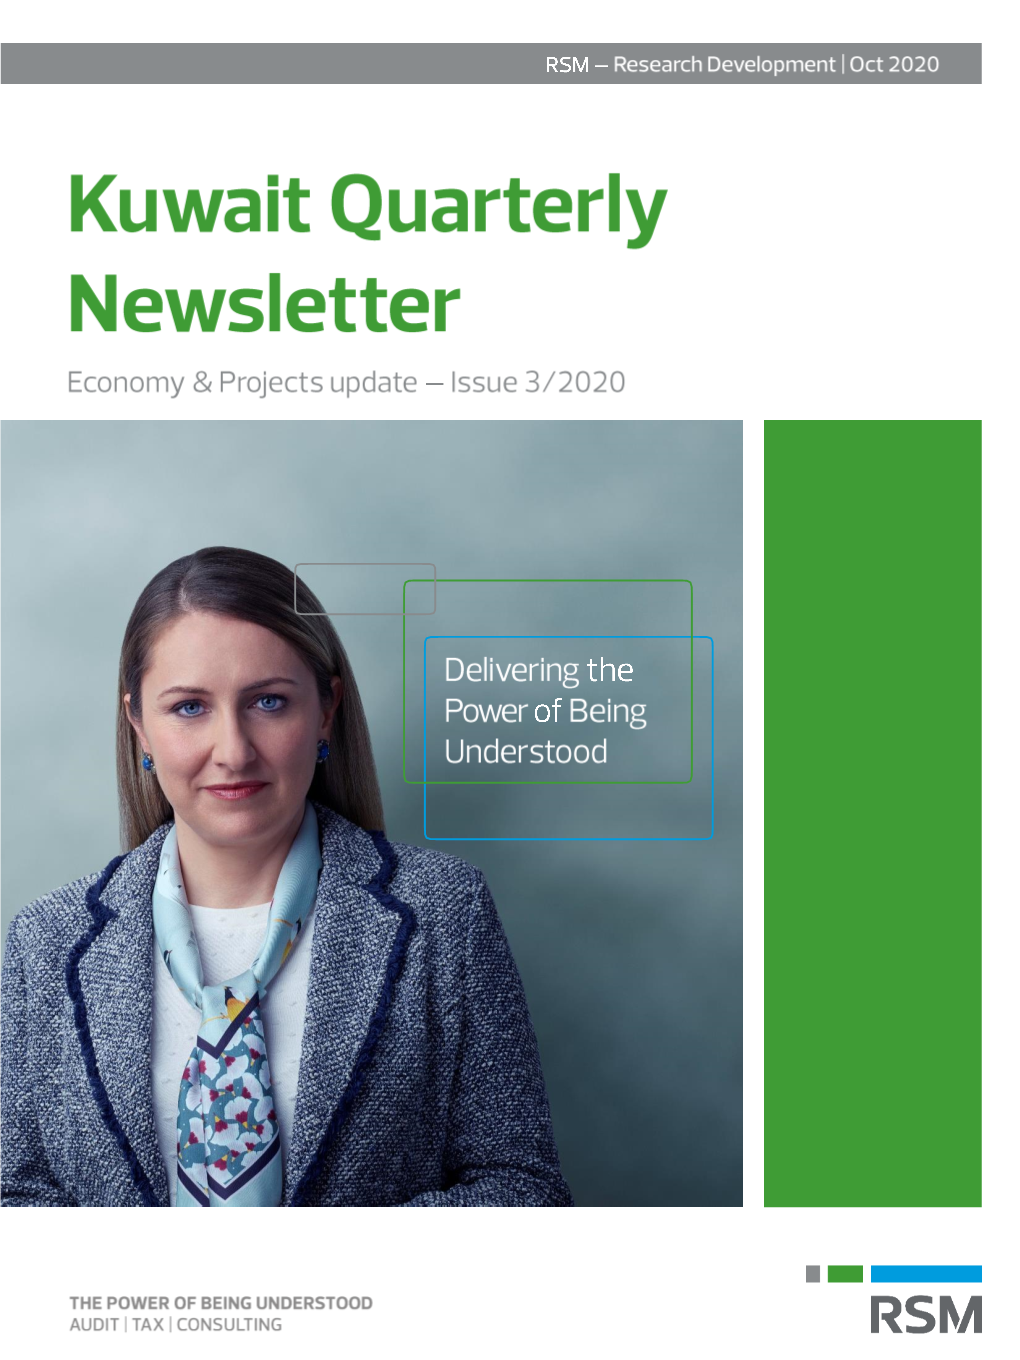 KUWAIT QUARTERLY NEWSLETTER October 2020